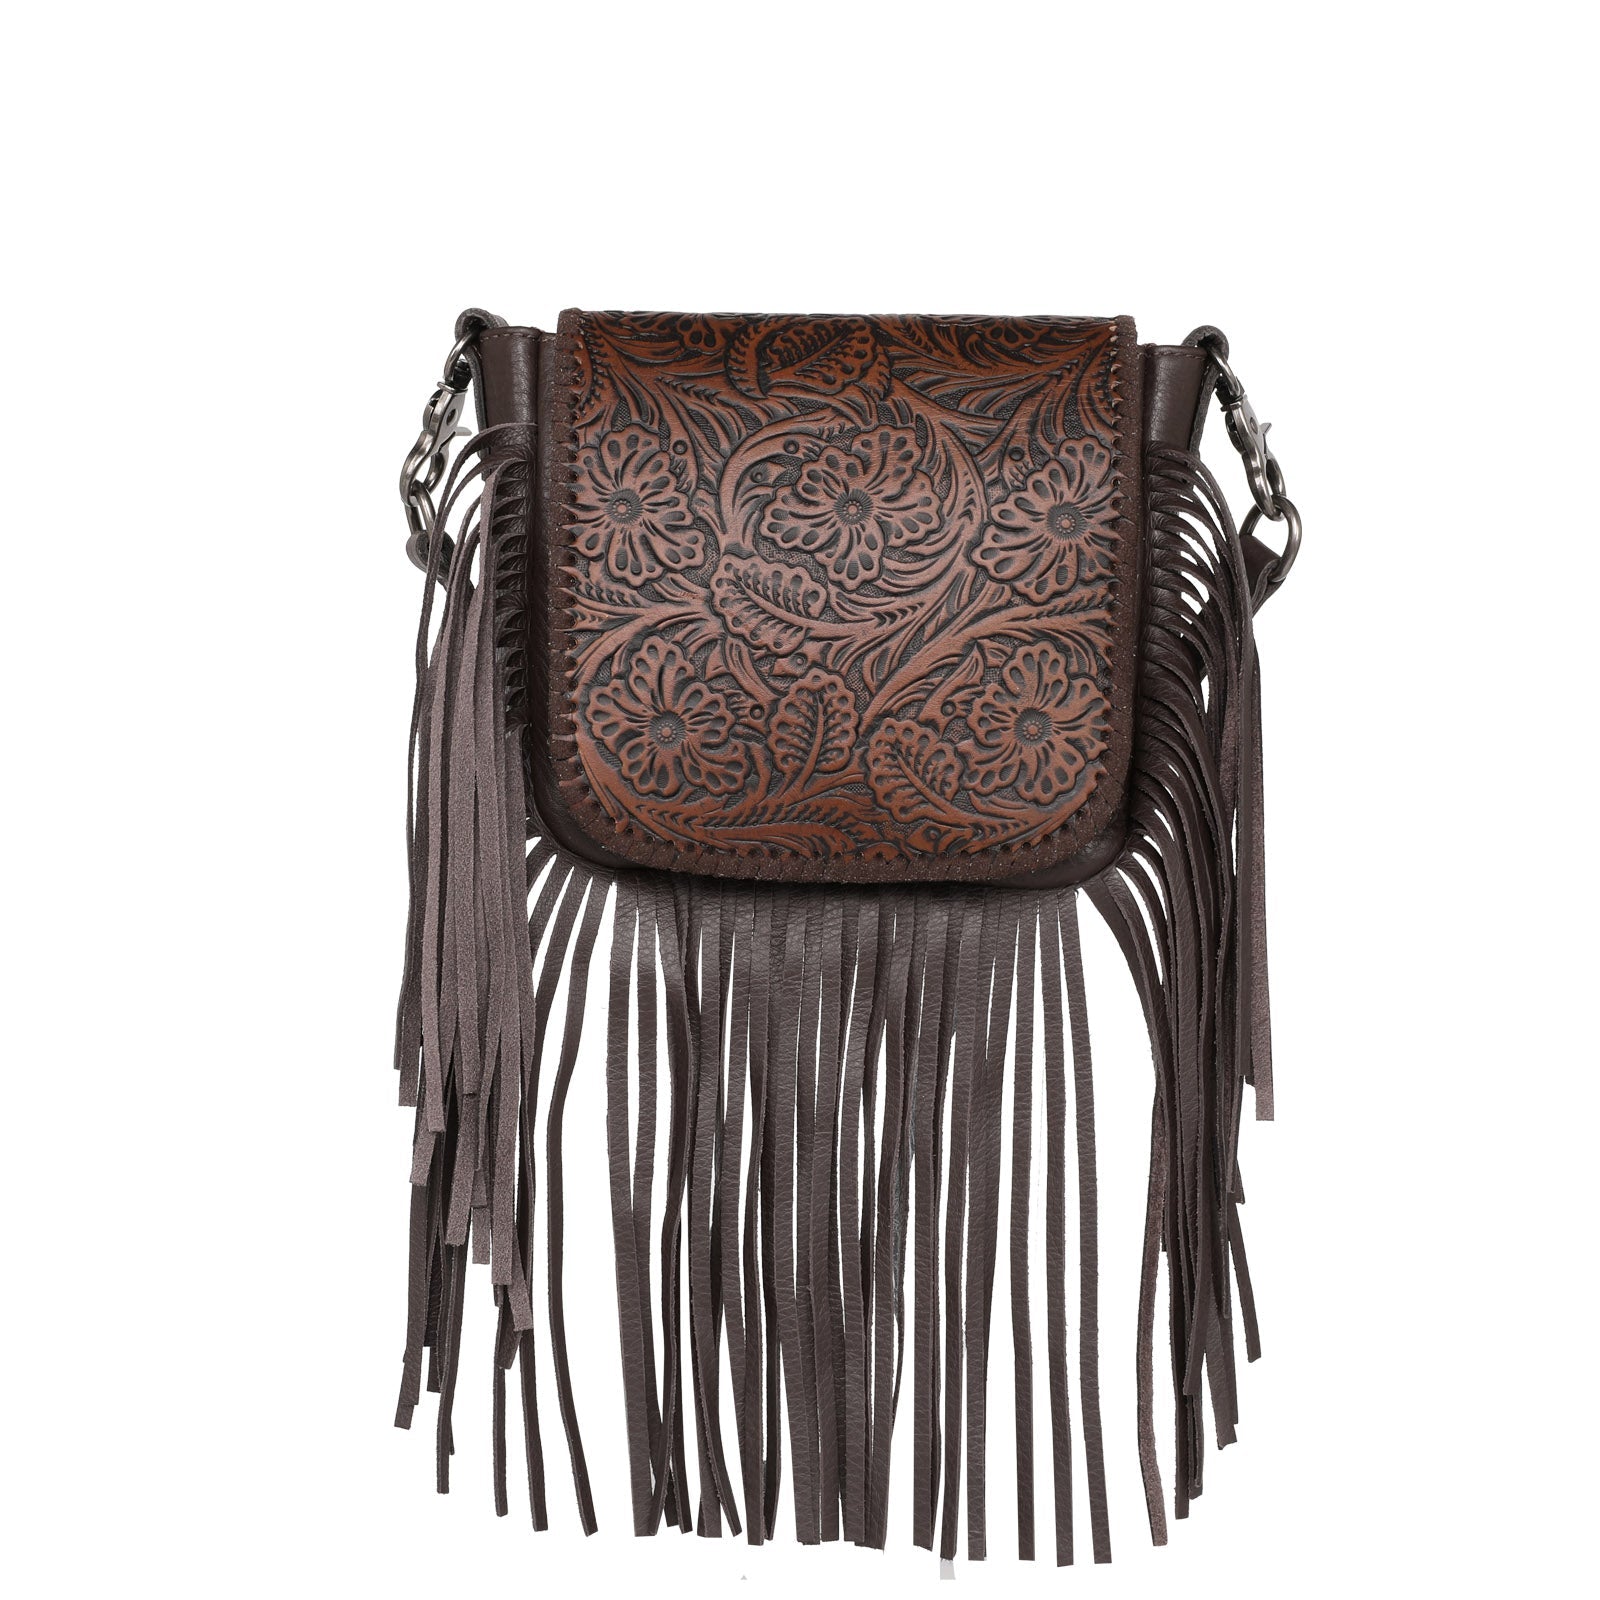 Western Leather Tooled Fringe Crossbody Bag Purse Handbag 100% 